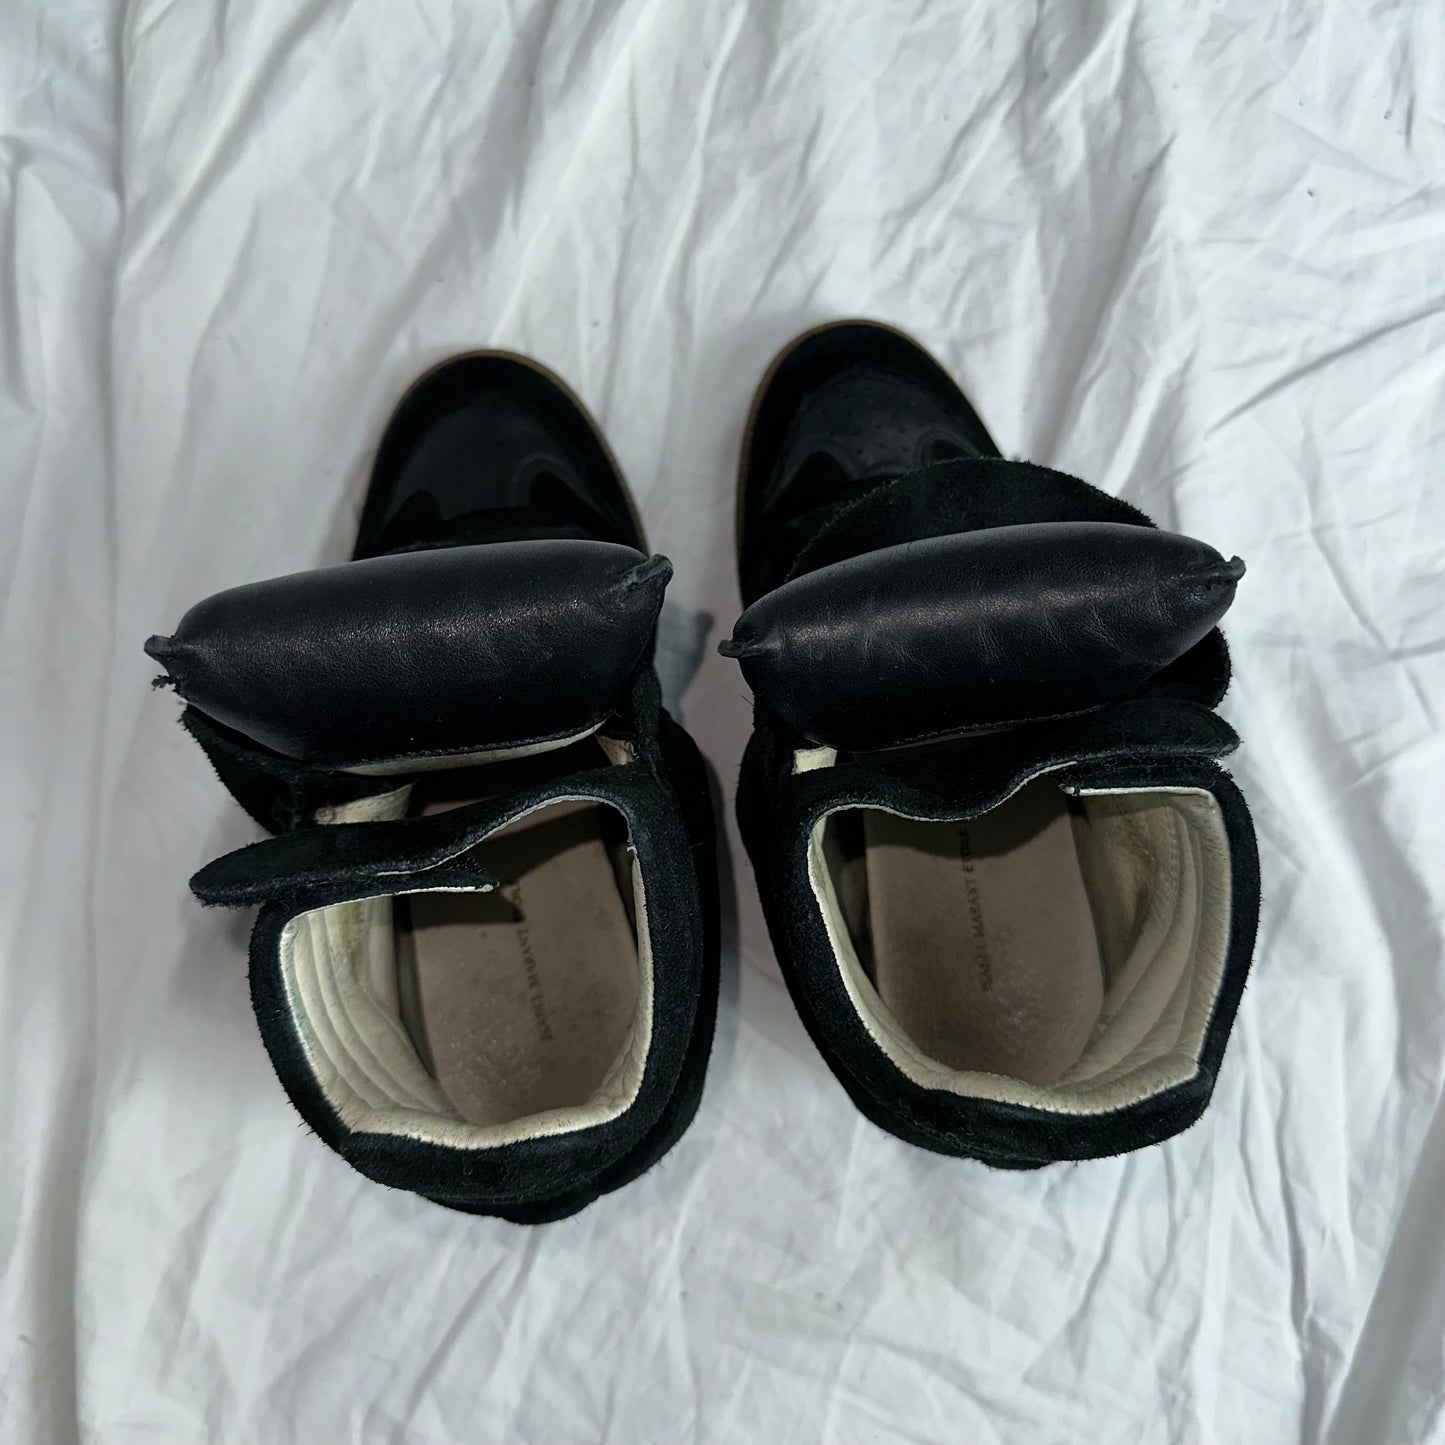 Isabel Marant Wedge Sneakers 36/37